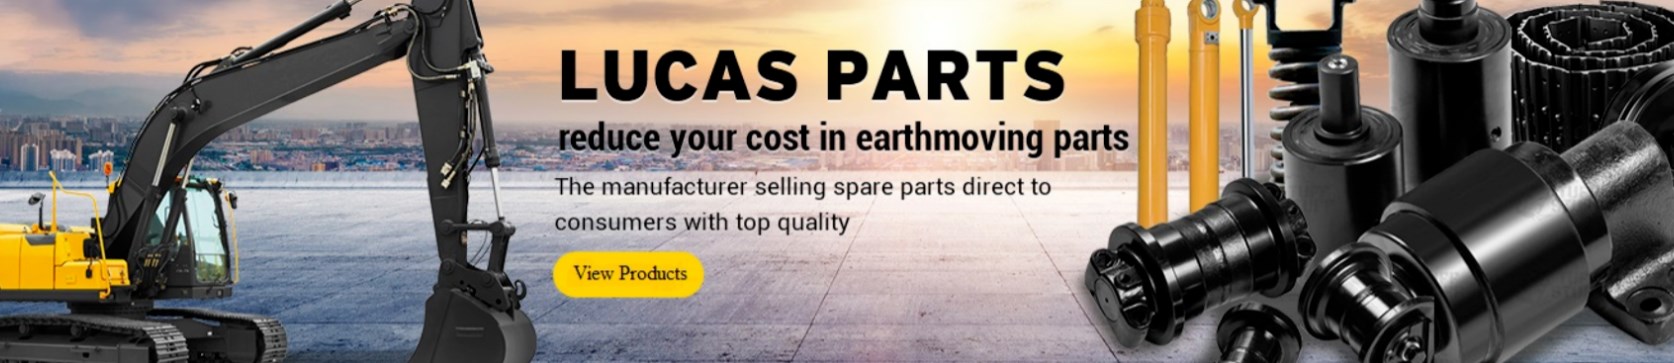 LUCAS PARTS excavator engine assembly manufacturer brands